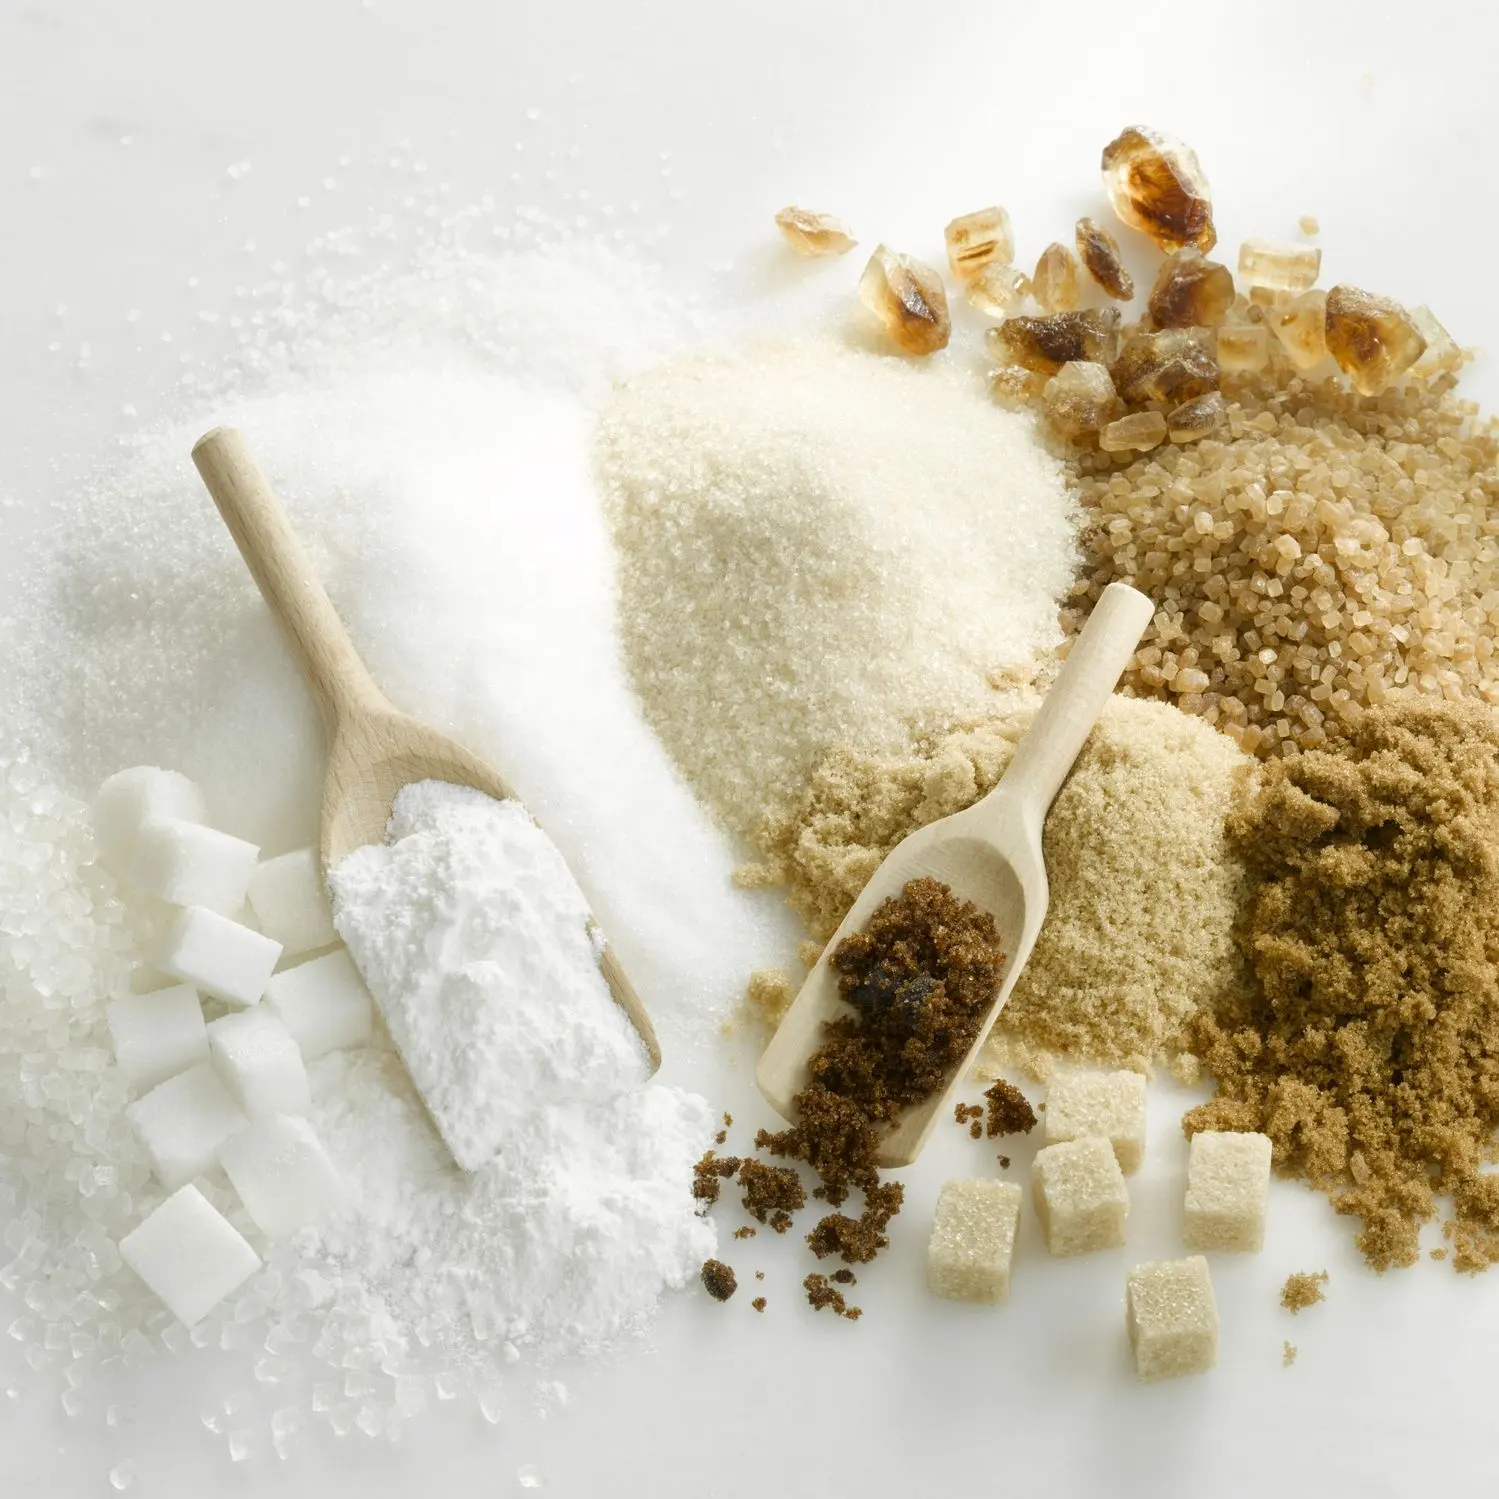 Se vende azúcar refinado Icumsa 45 | Azúcar Moreno crudo de Brasil | Comprar azúcar de remolacha